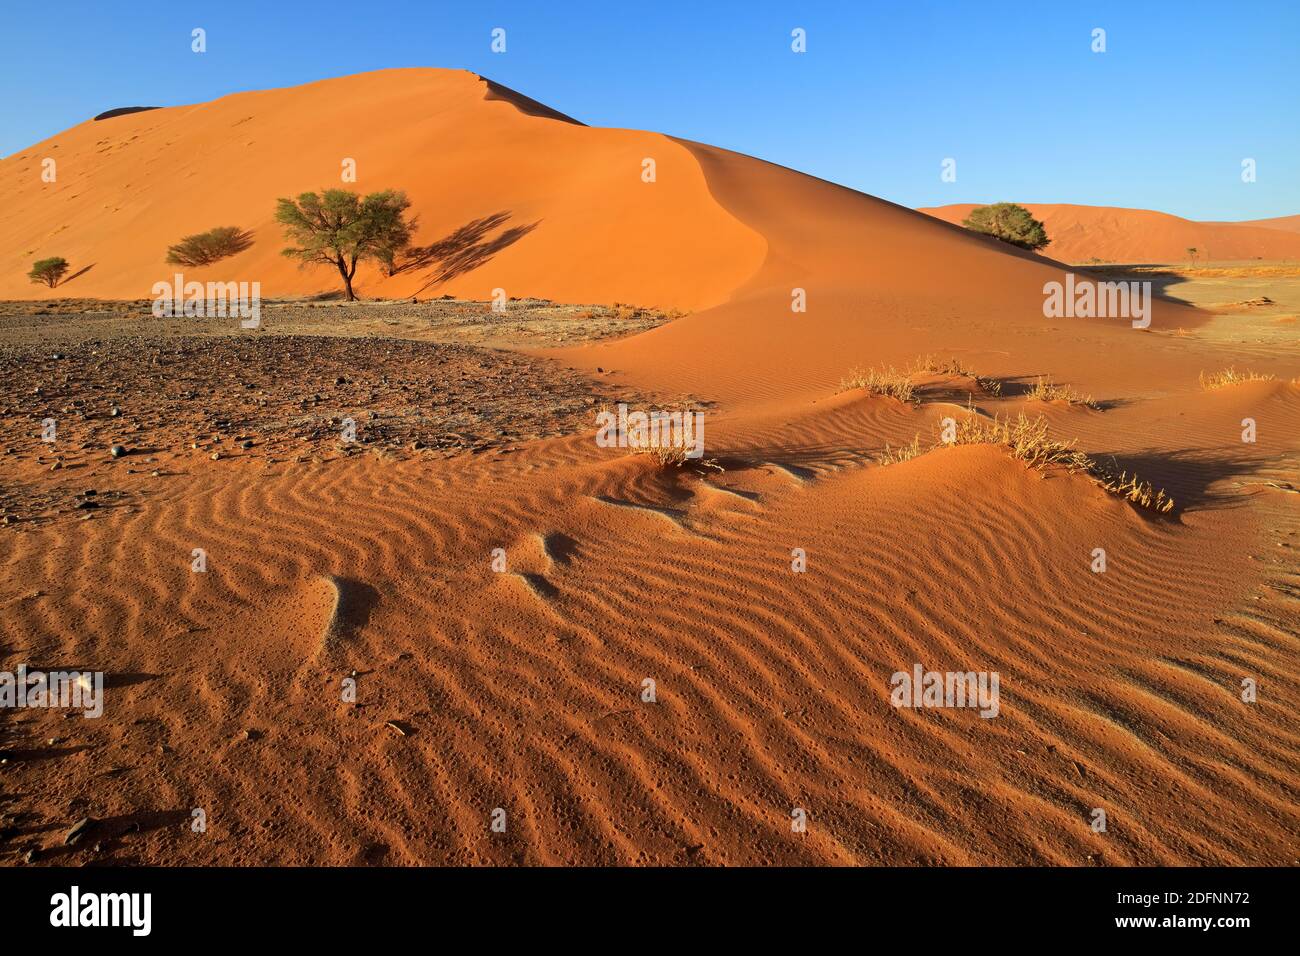 Dune de sable rouge avec cailloux en pierre et arbres épineux, Sossusvlei, désert du Namib, Namibie Banque D'Images